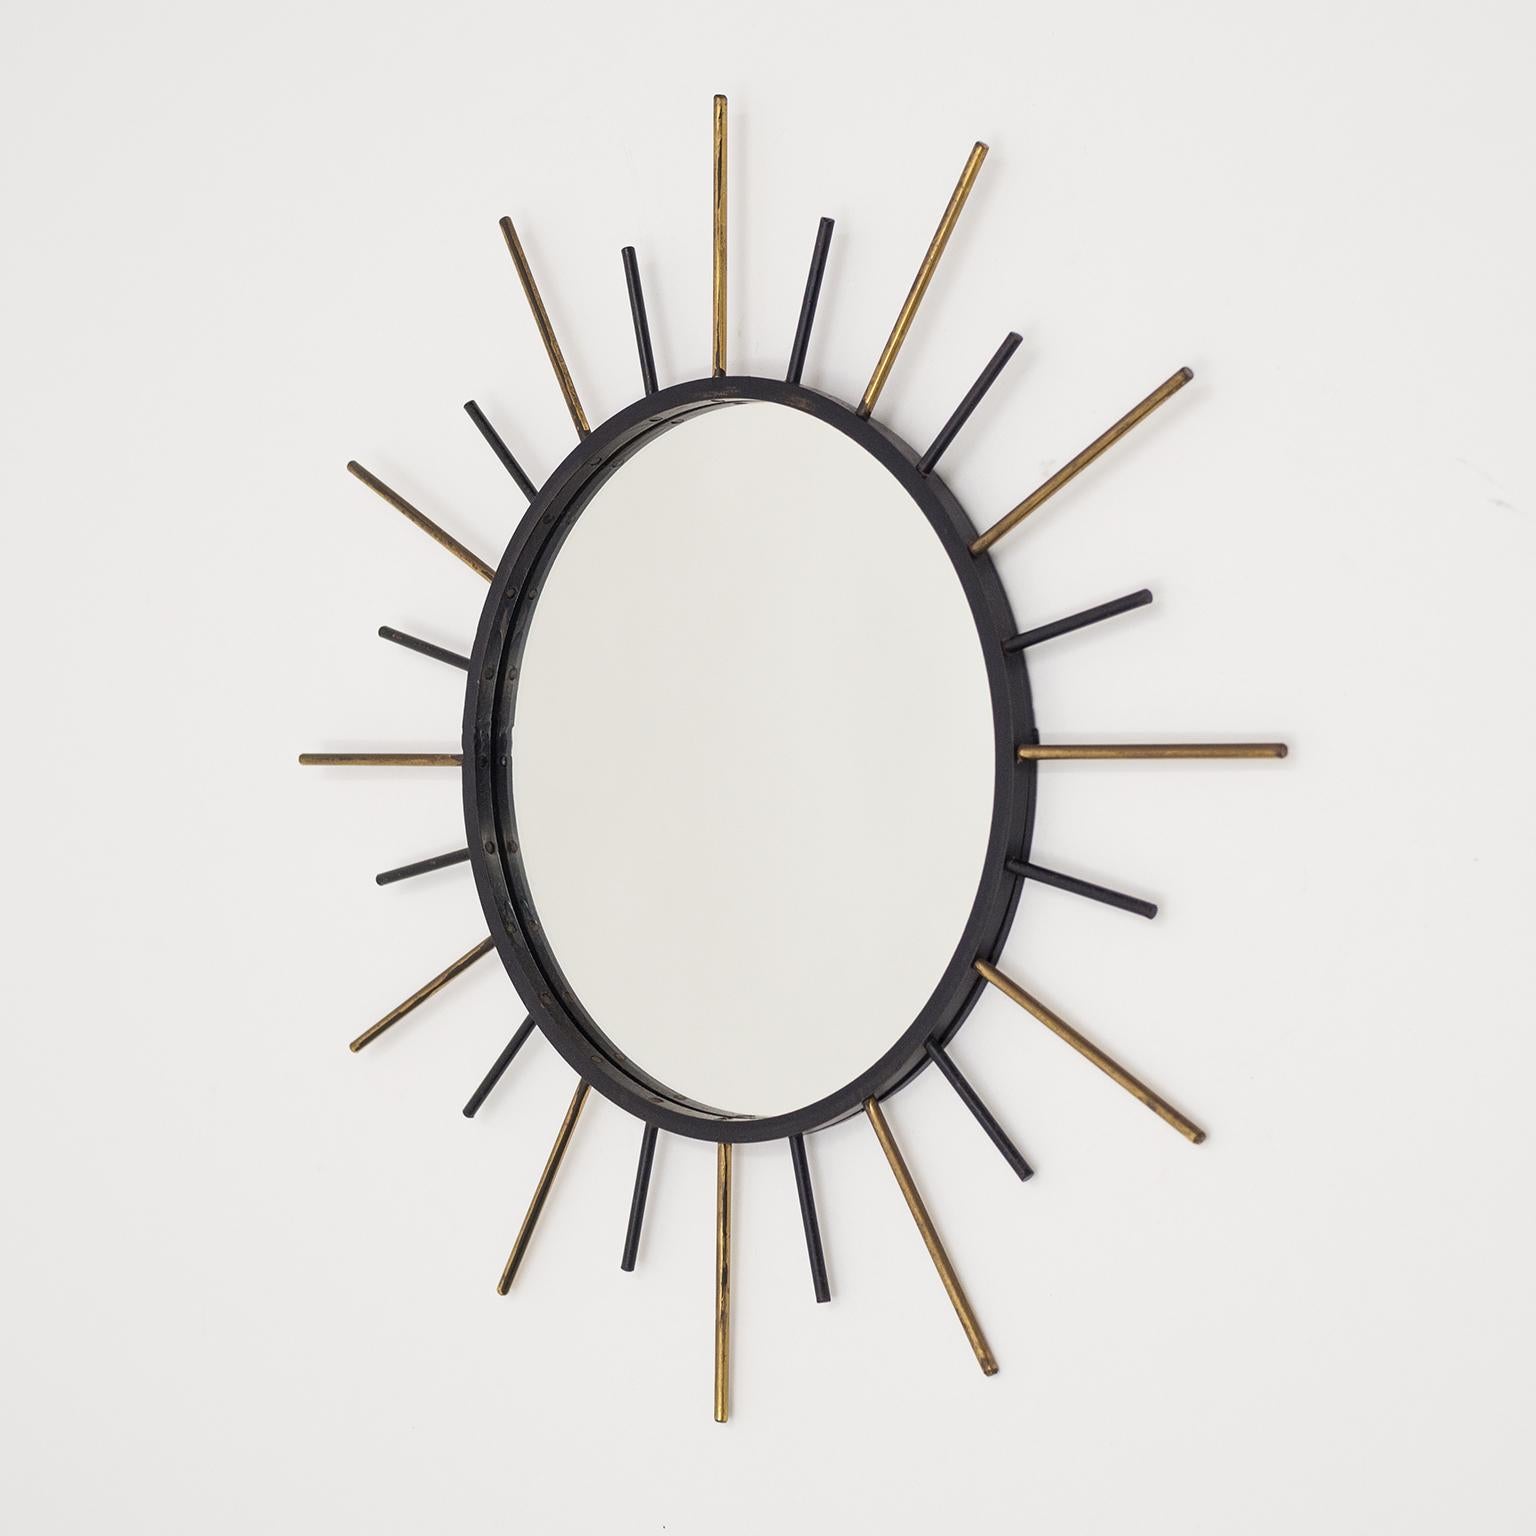 Französischer modernistischer Sonnenschliffspiegel aus den 1950er Jahren mit geschwärztem Stahlrahmen und abwechselnden Strahlen aus Messing und Stahl. Guter Originalzustand mit Patina auf dem Messing und einigen leichten Farbverlusten.